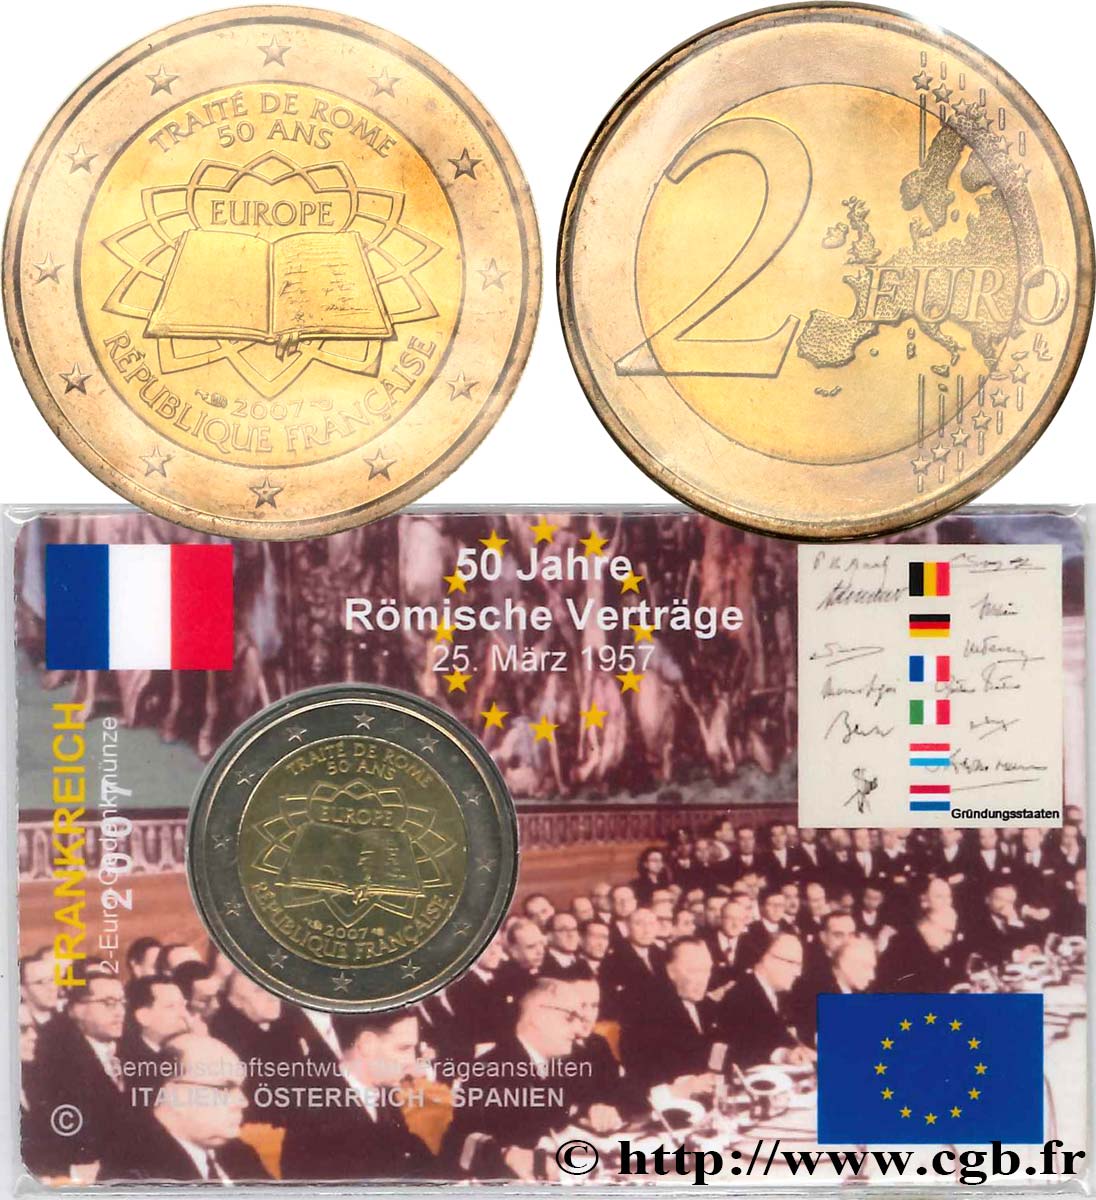 FRANCE Coin-Card 2 Euro CINQUANTENAIRE DU TRAITÉ DE ROME 2007 Brilliant Uncirculated